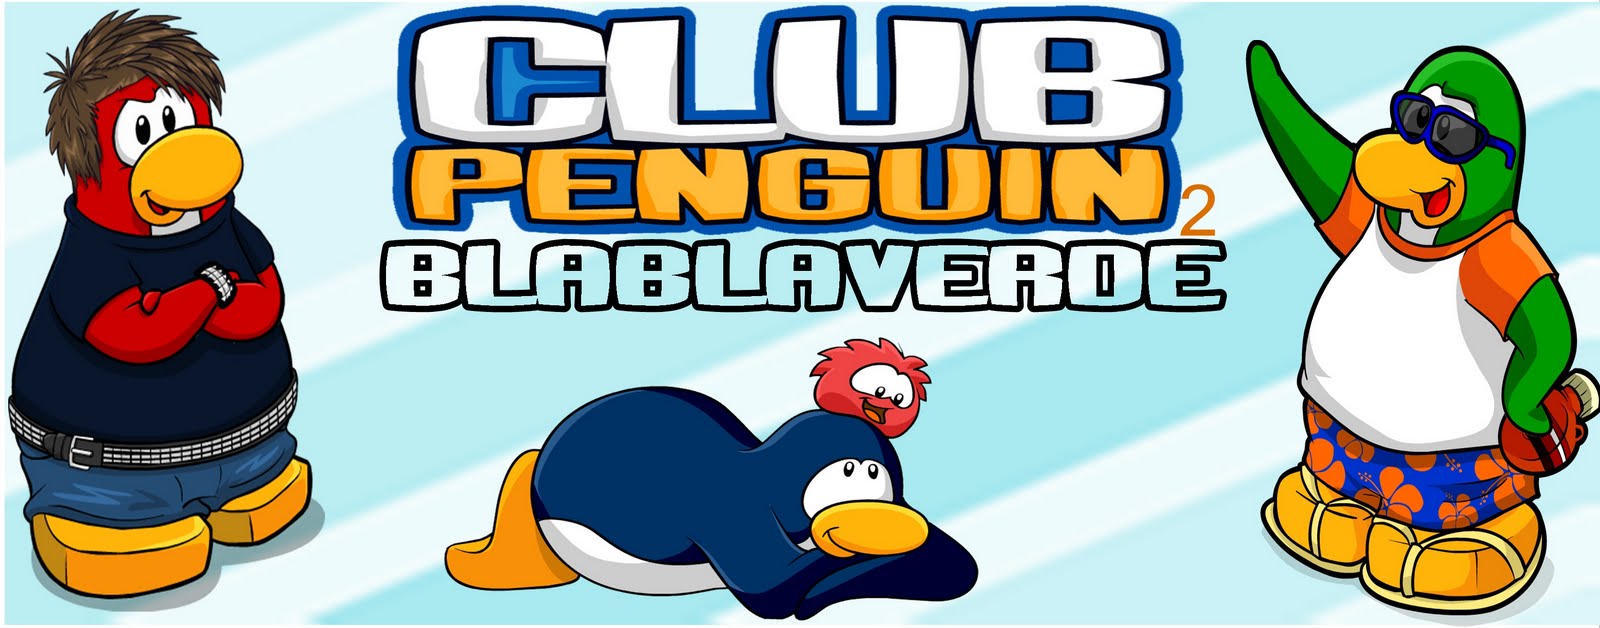 Club Penguin blablaverde2